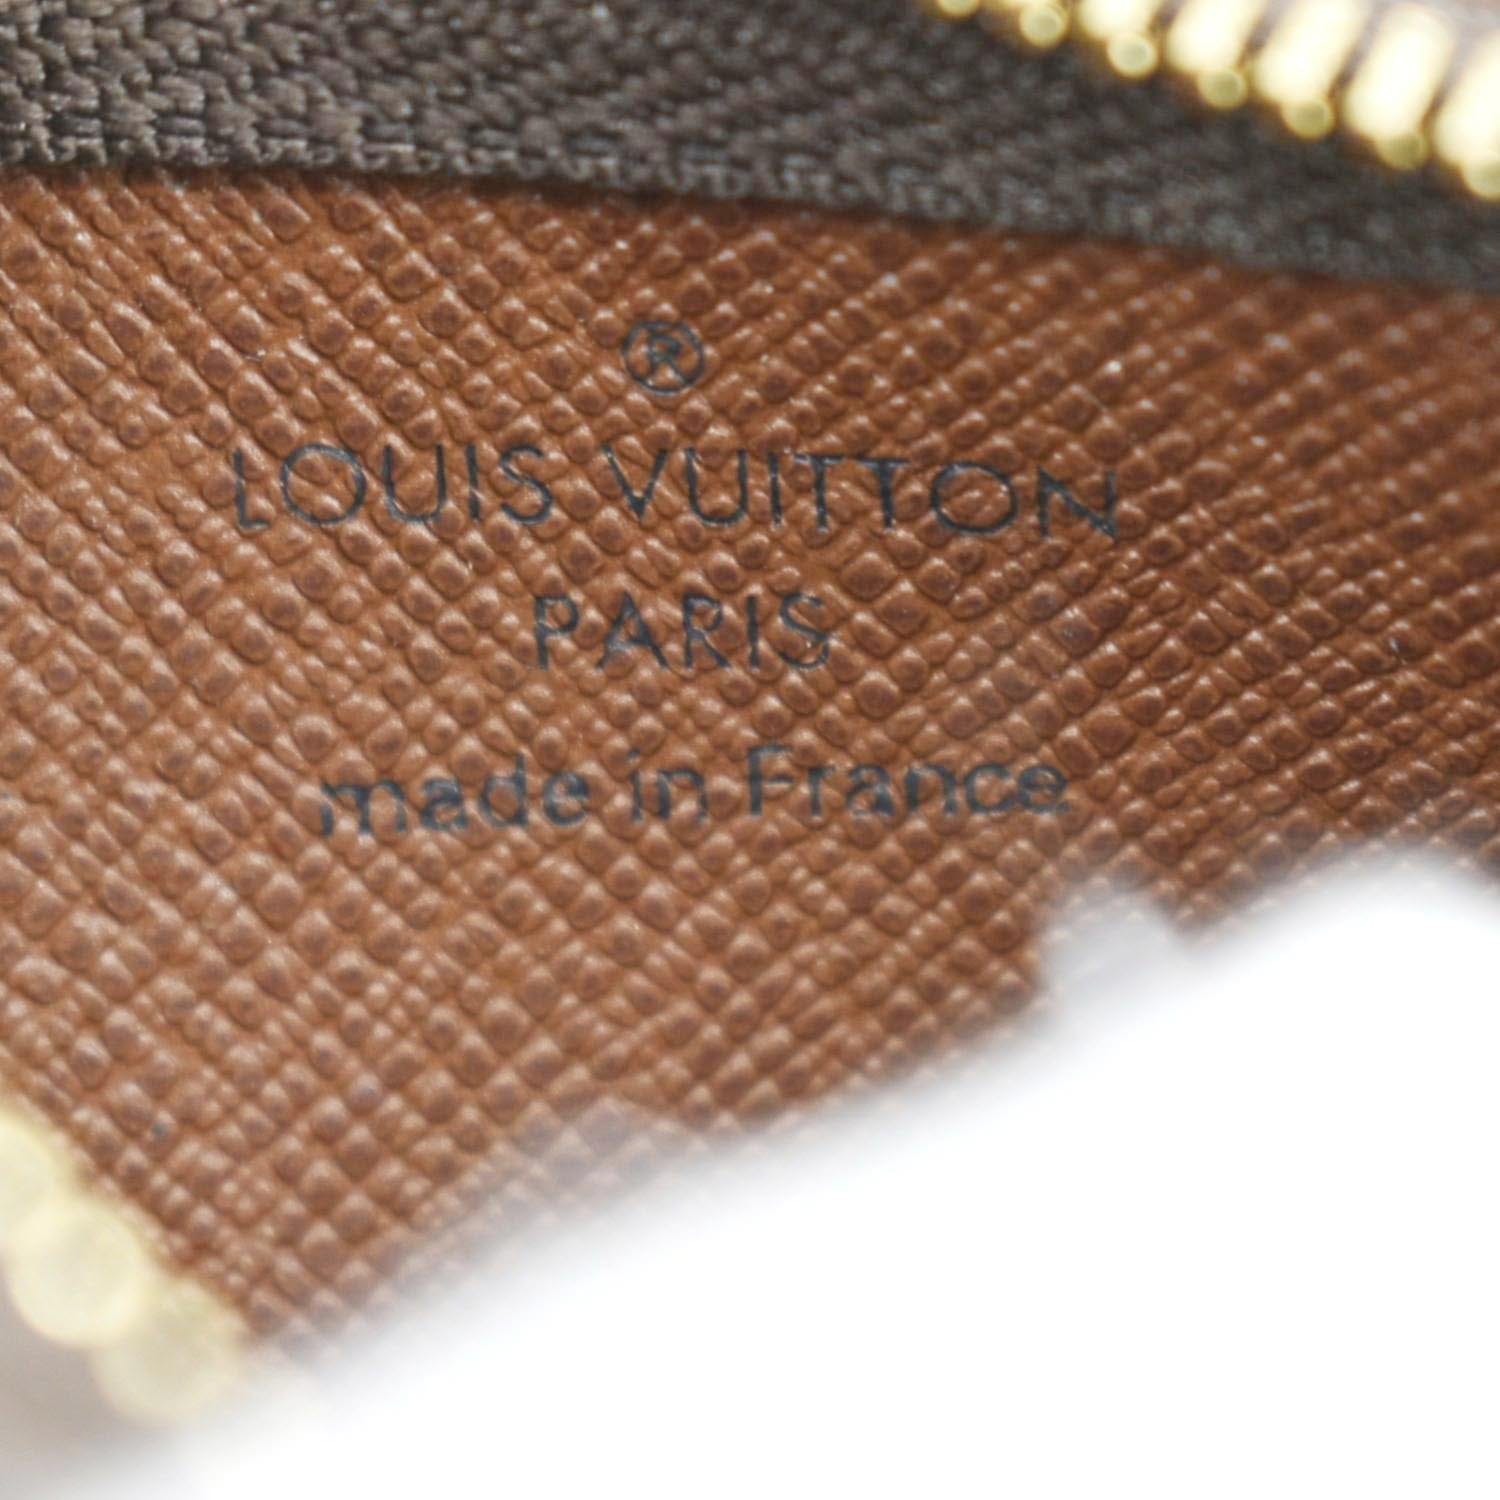 Louis Vuitton Louis Vuitton Pochette Cles Monogram Canvas Coin Key